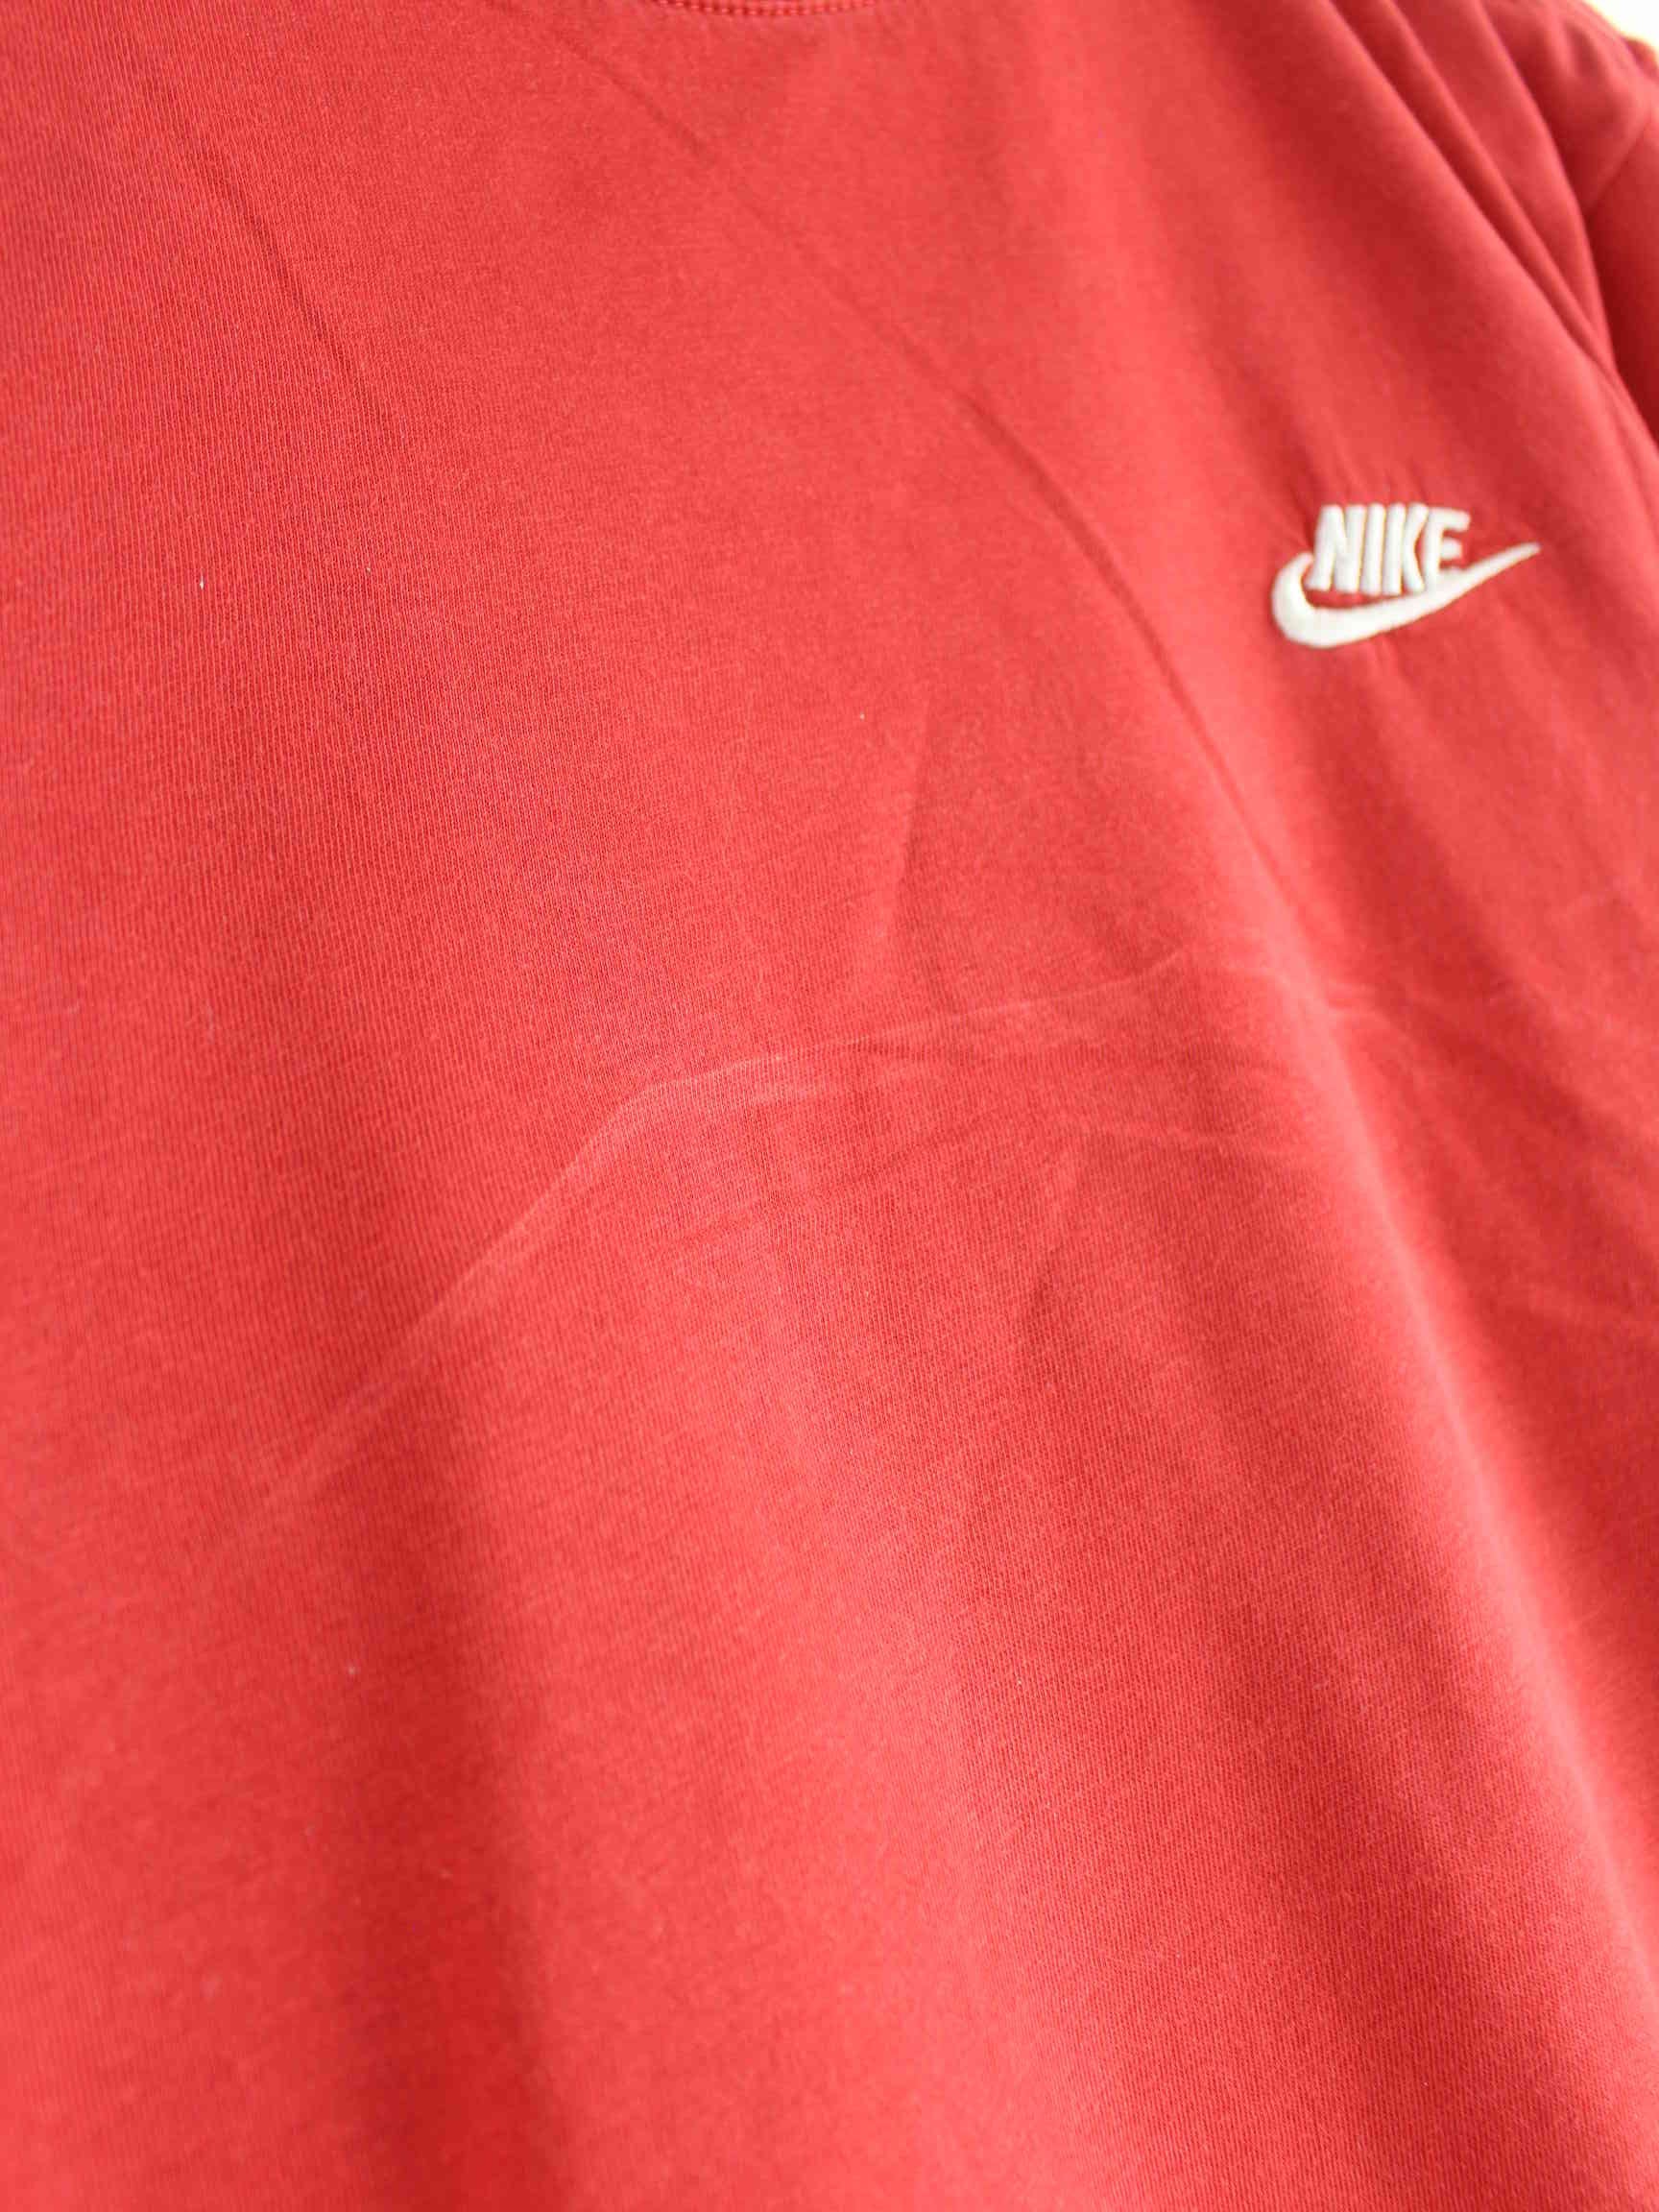 Nike Basic T-Shirt Rot XL (detail image 2)